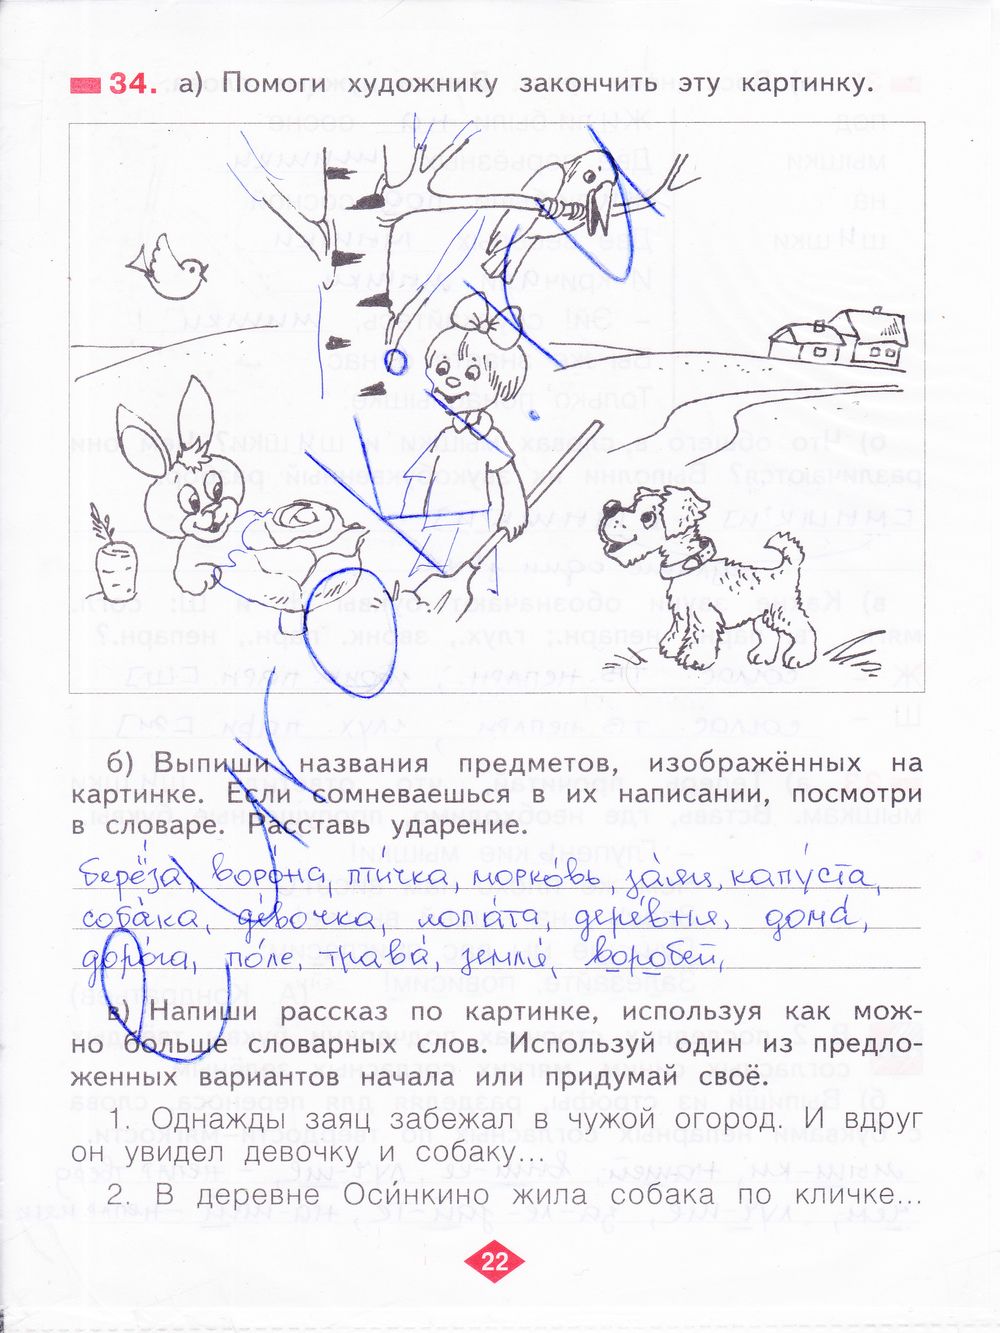 ГДЗ Русский язык 2 класс - стр. 22